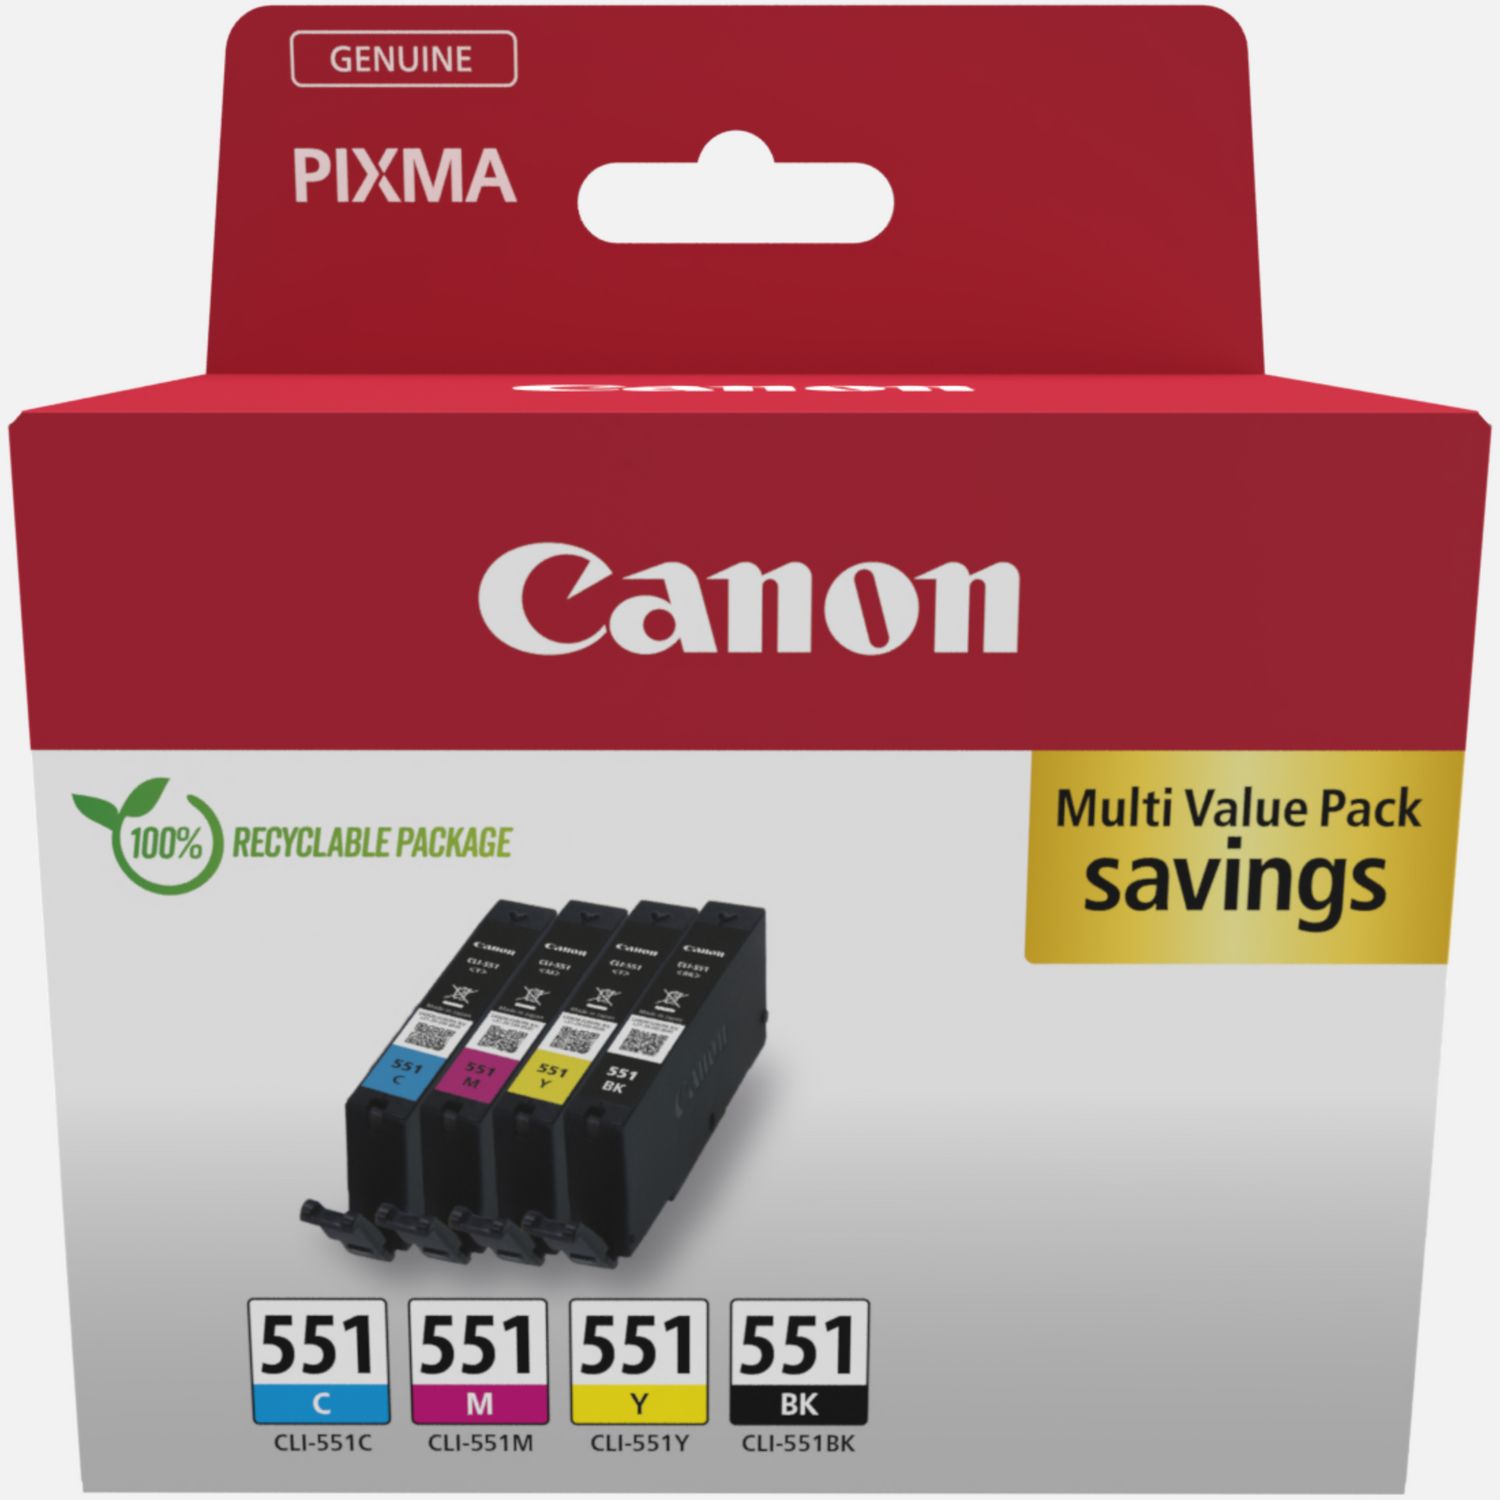 Cartouche d'encre / alternative pour Canon CLI-551M rouge, Canon Pixma  IP7250 /